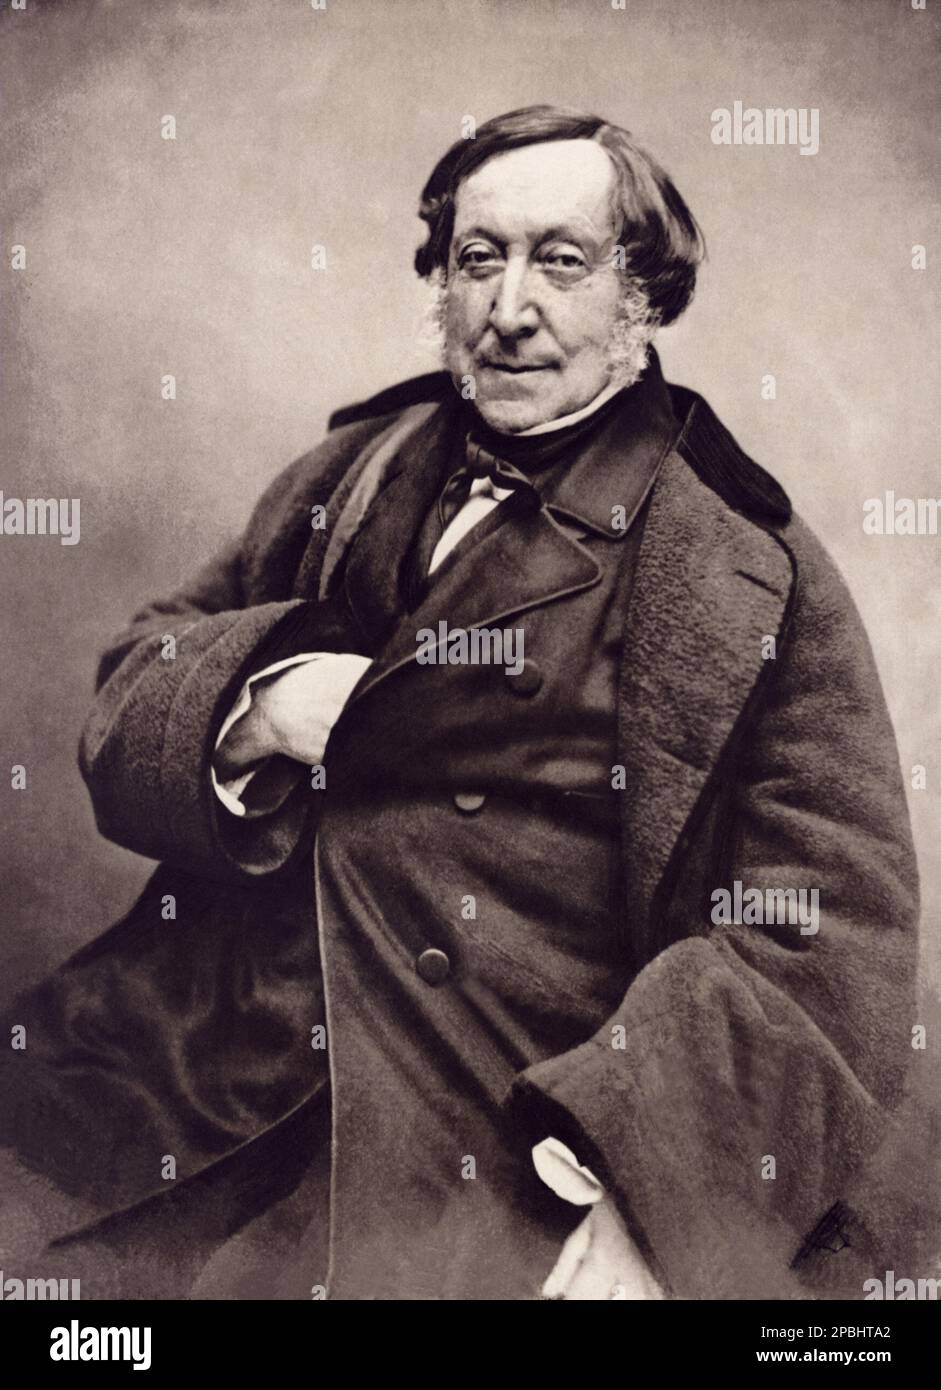 1856, Parigi , Francia : il celebre compositore italiano GIOACCHINO ROSSINI ( 1792 - 1868 ). Foto di Nadar , Parigi - COMPOSITORE - OPERA LIRICA - CLASSICA - CLASSICA - RITRATTO - ritratto - musica - MUSICA - MUSICA - FIOCCO - FIOCCO - CRAVATTA - CRAVATTA - colletto - colletto - cappotto ---- ARCHIVIO GBB Foto Stock